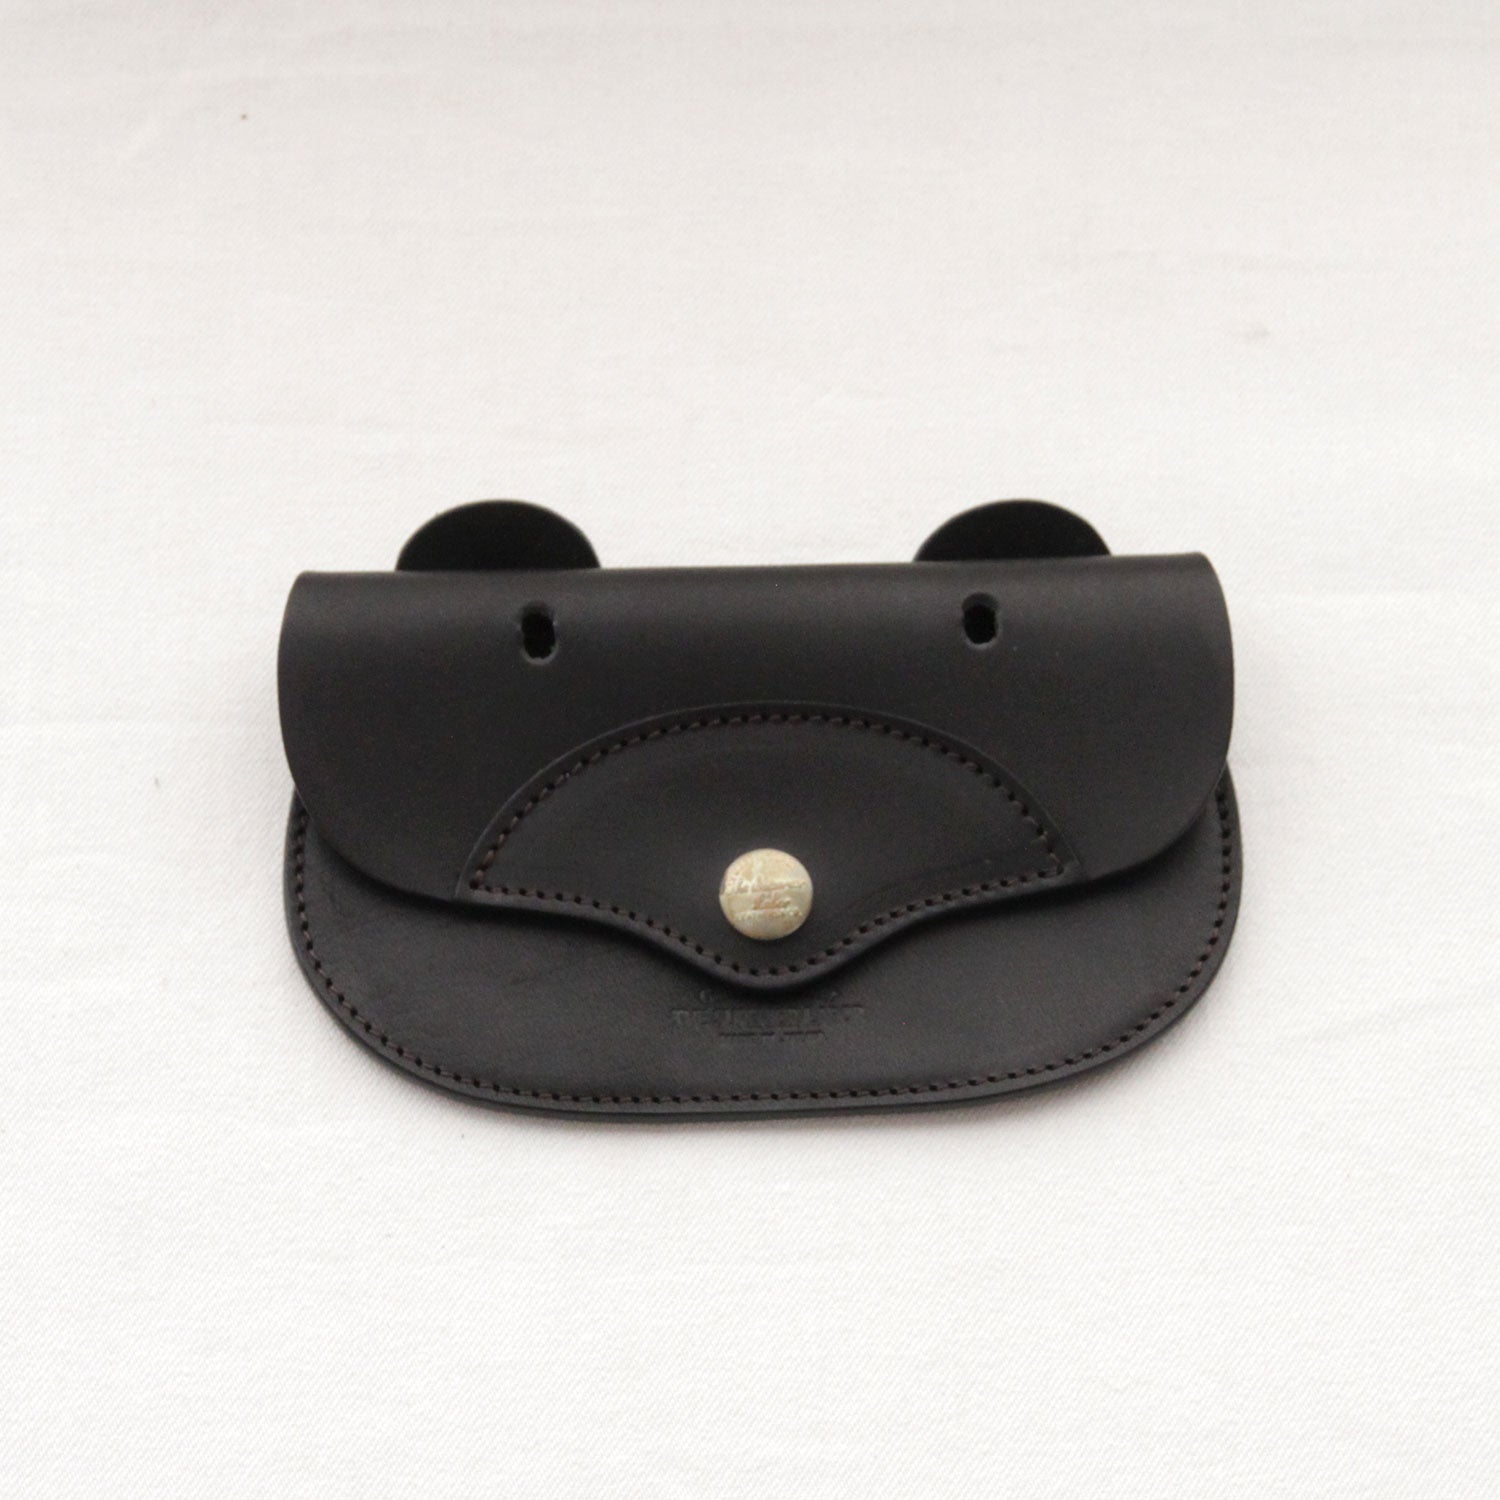 SL0135 bear purse